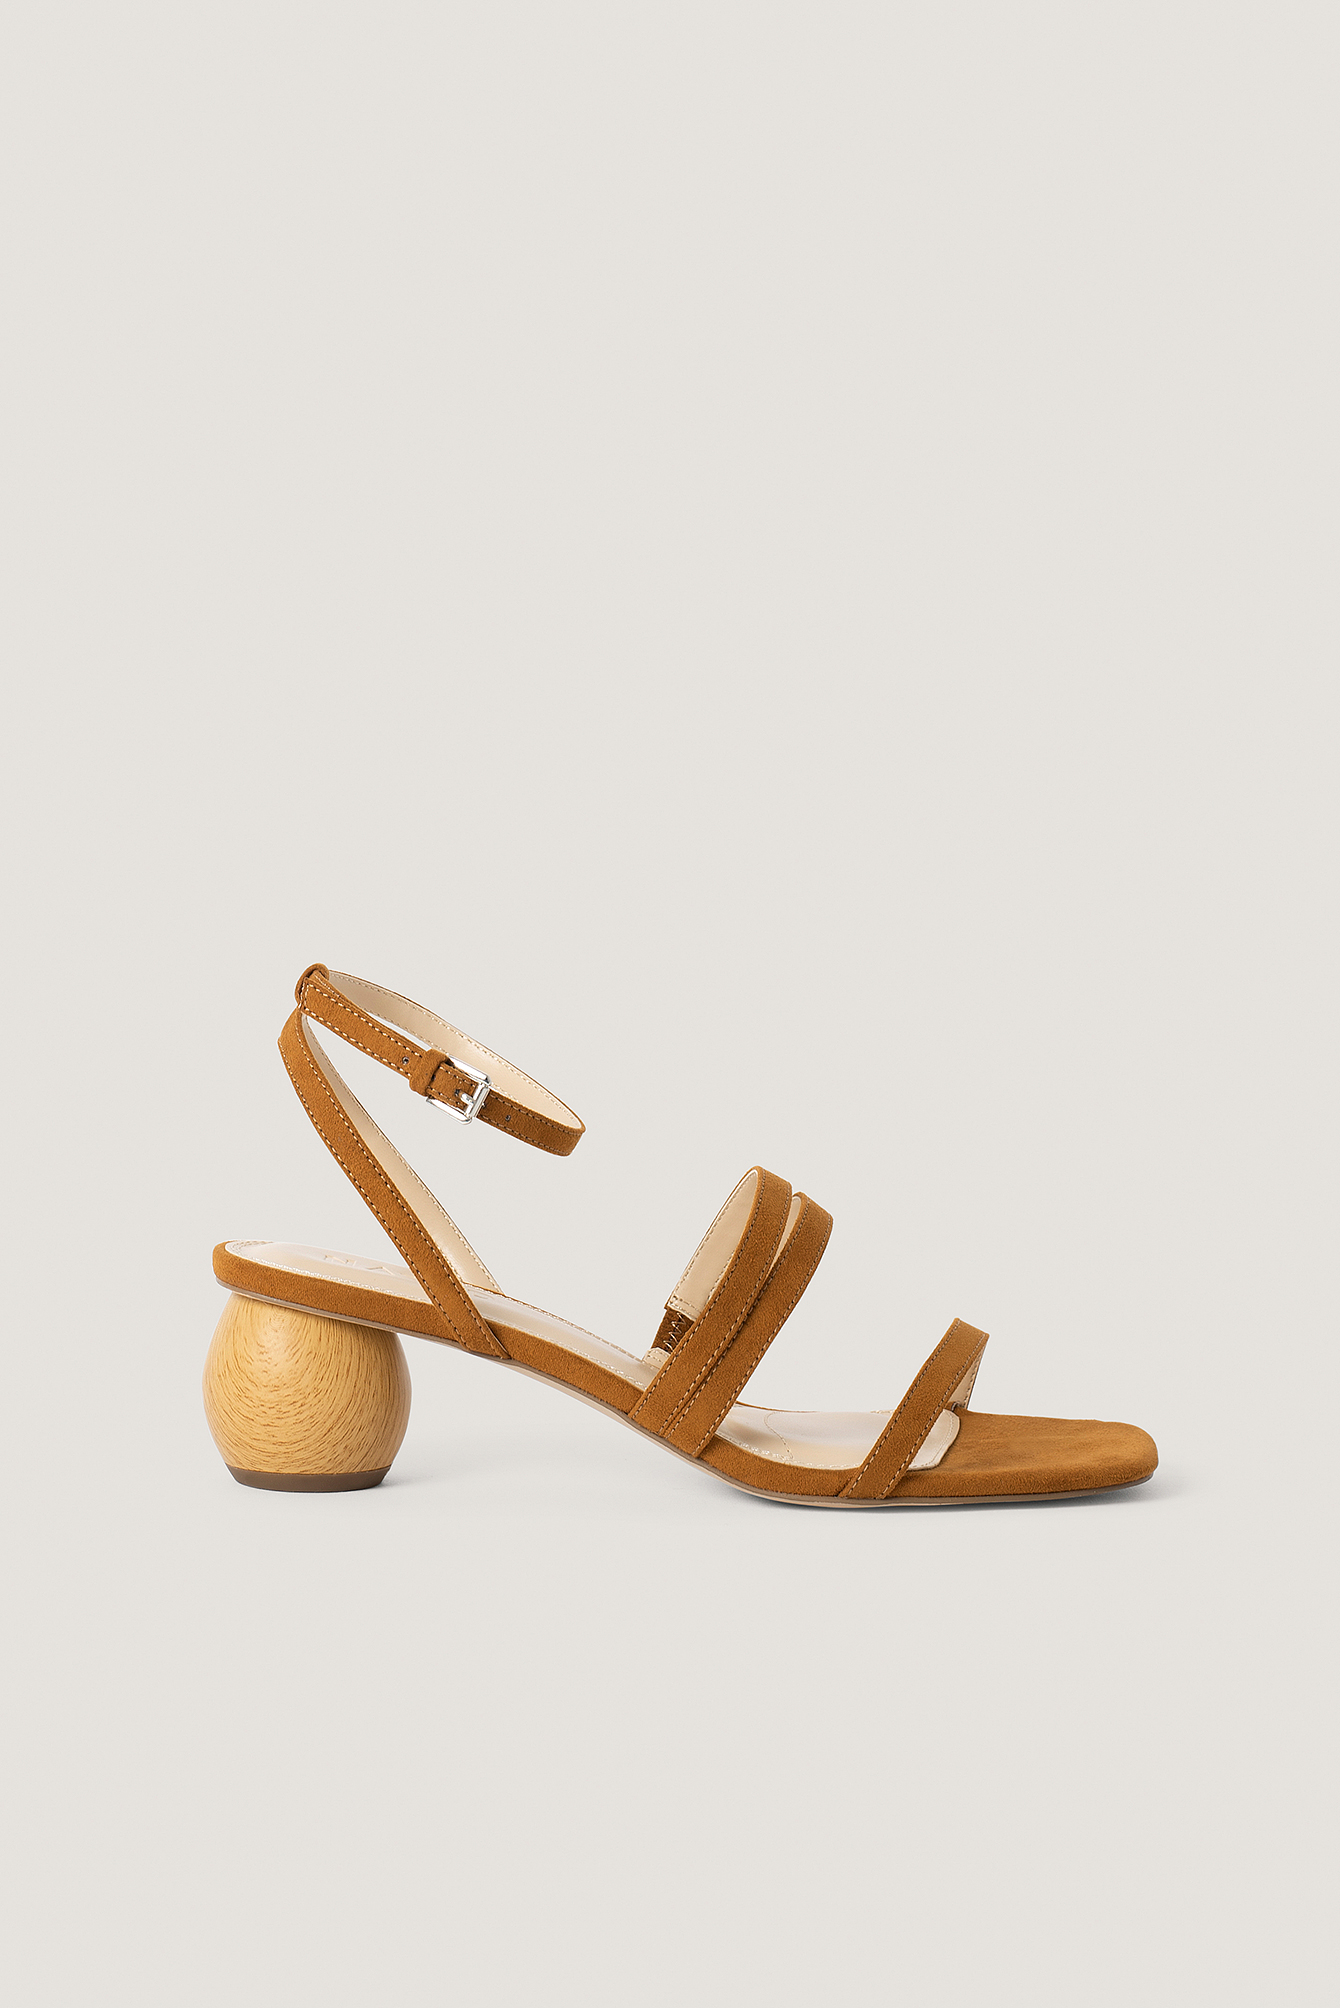 Brown Wooden Heel Sandals